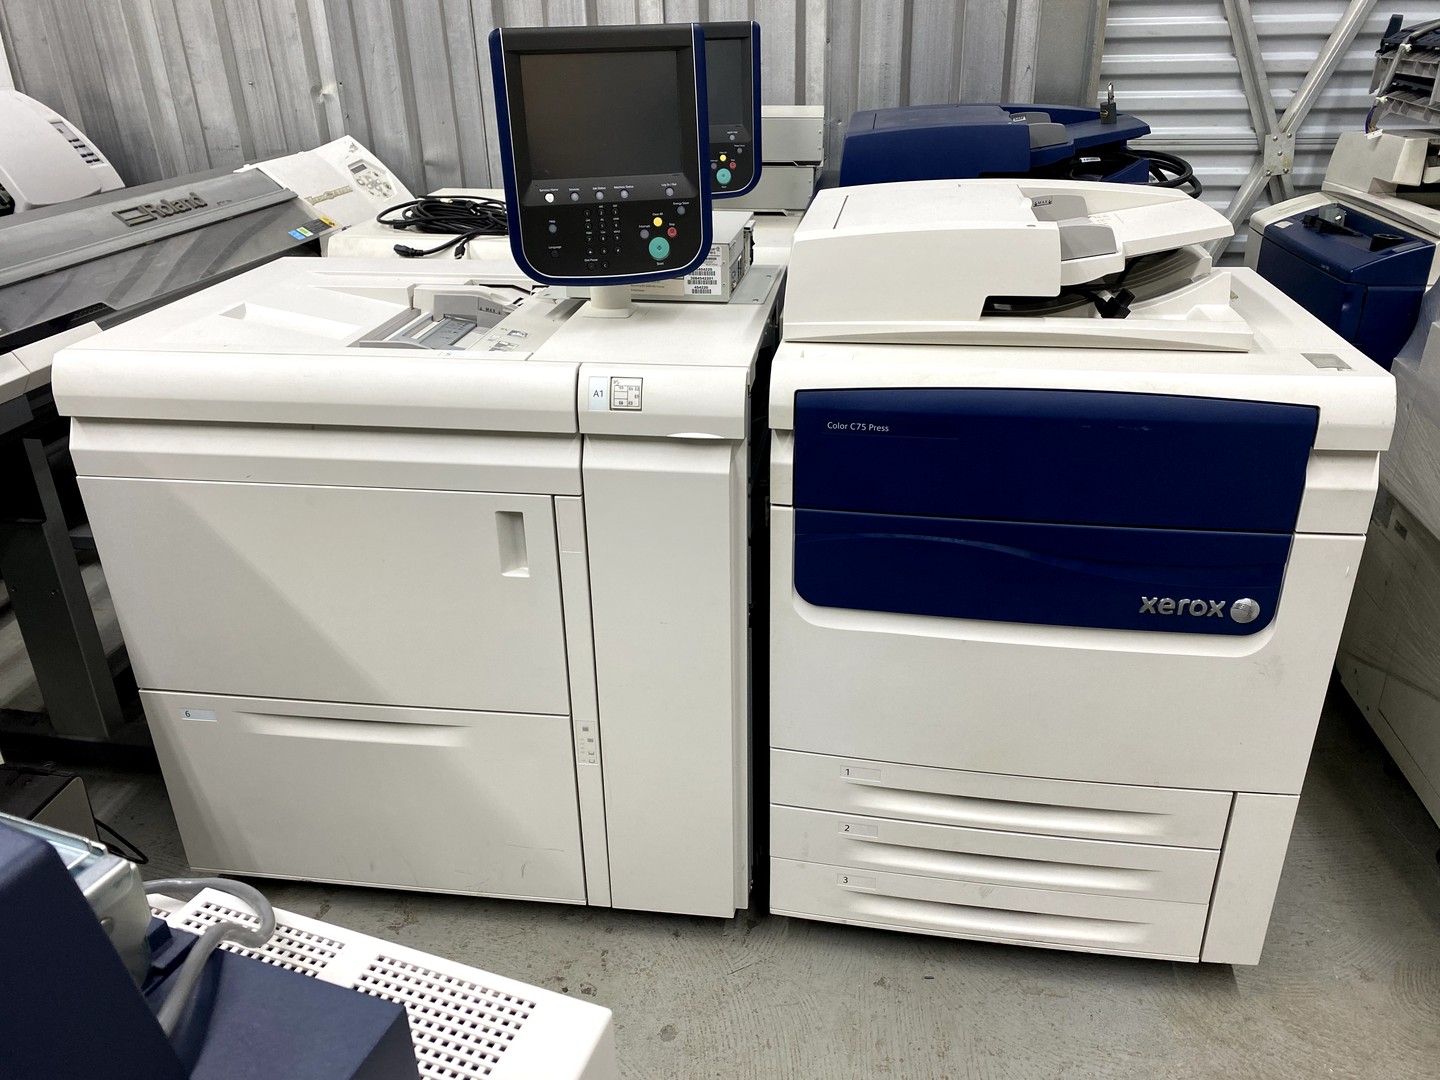 impresoras y scanners - copiadora color xerox C75press 0